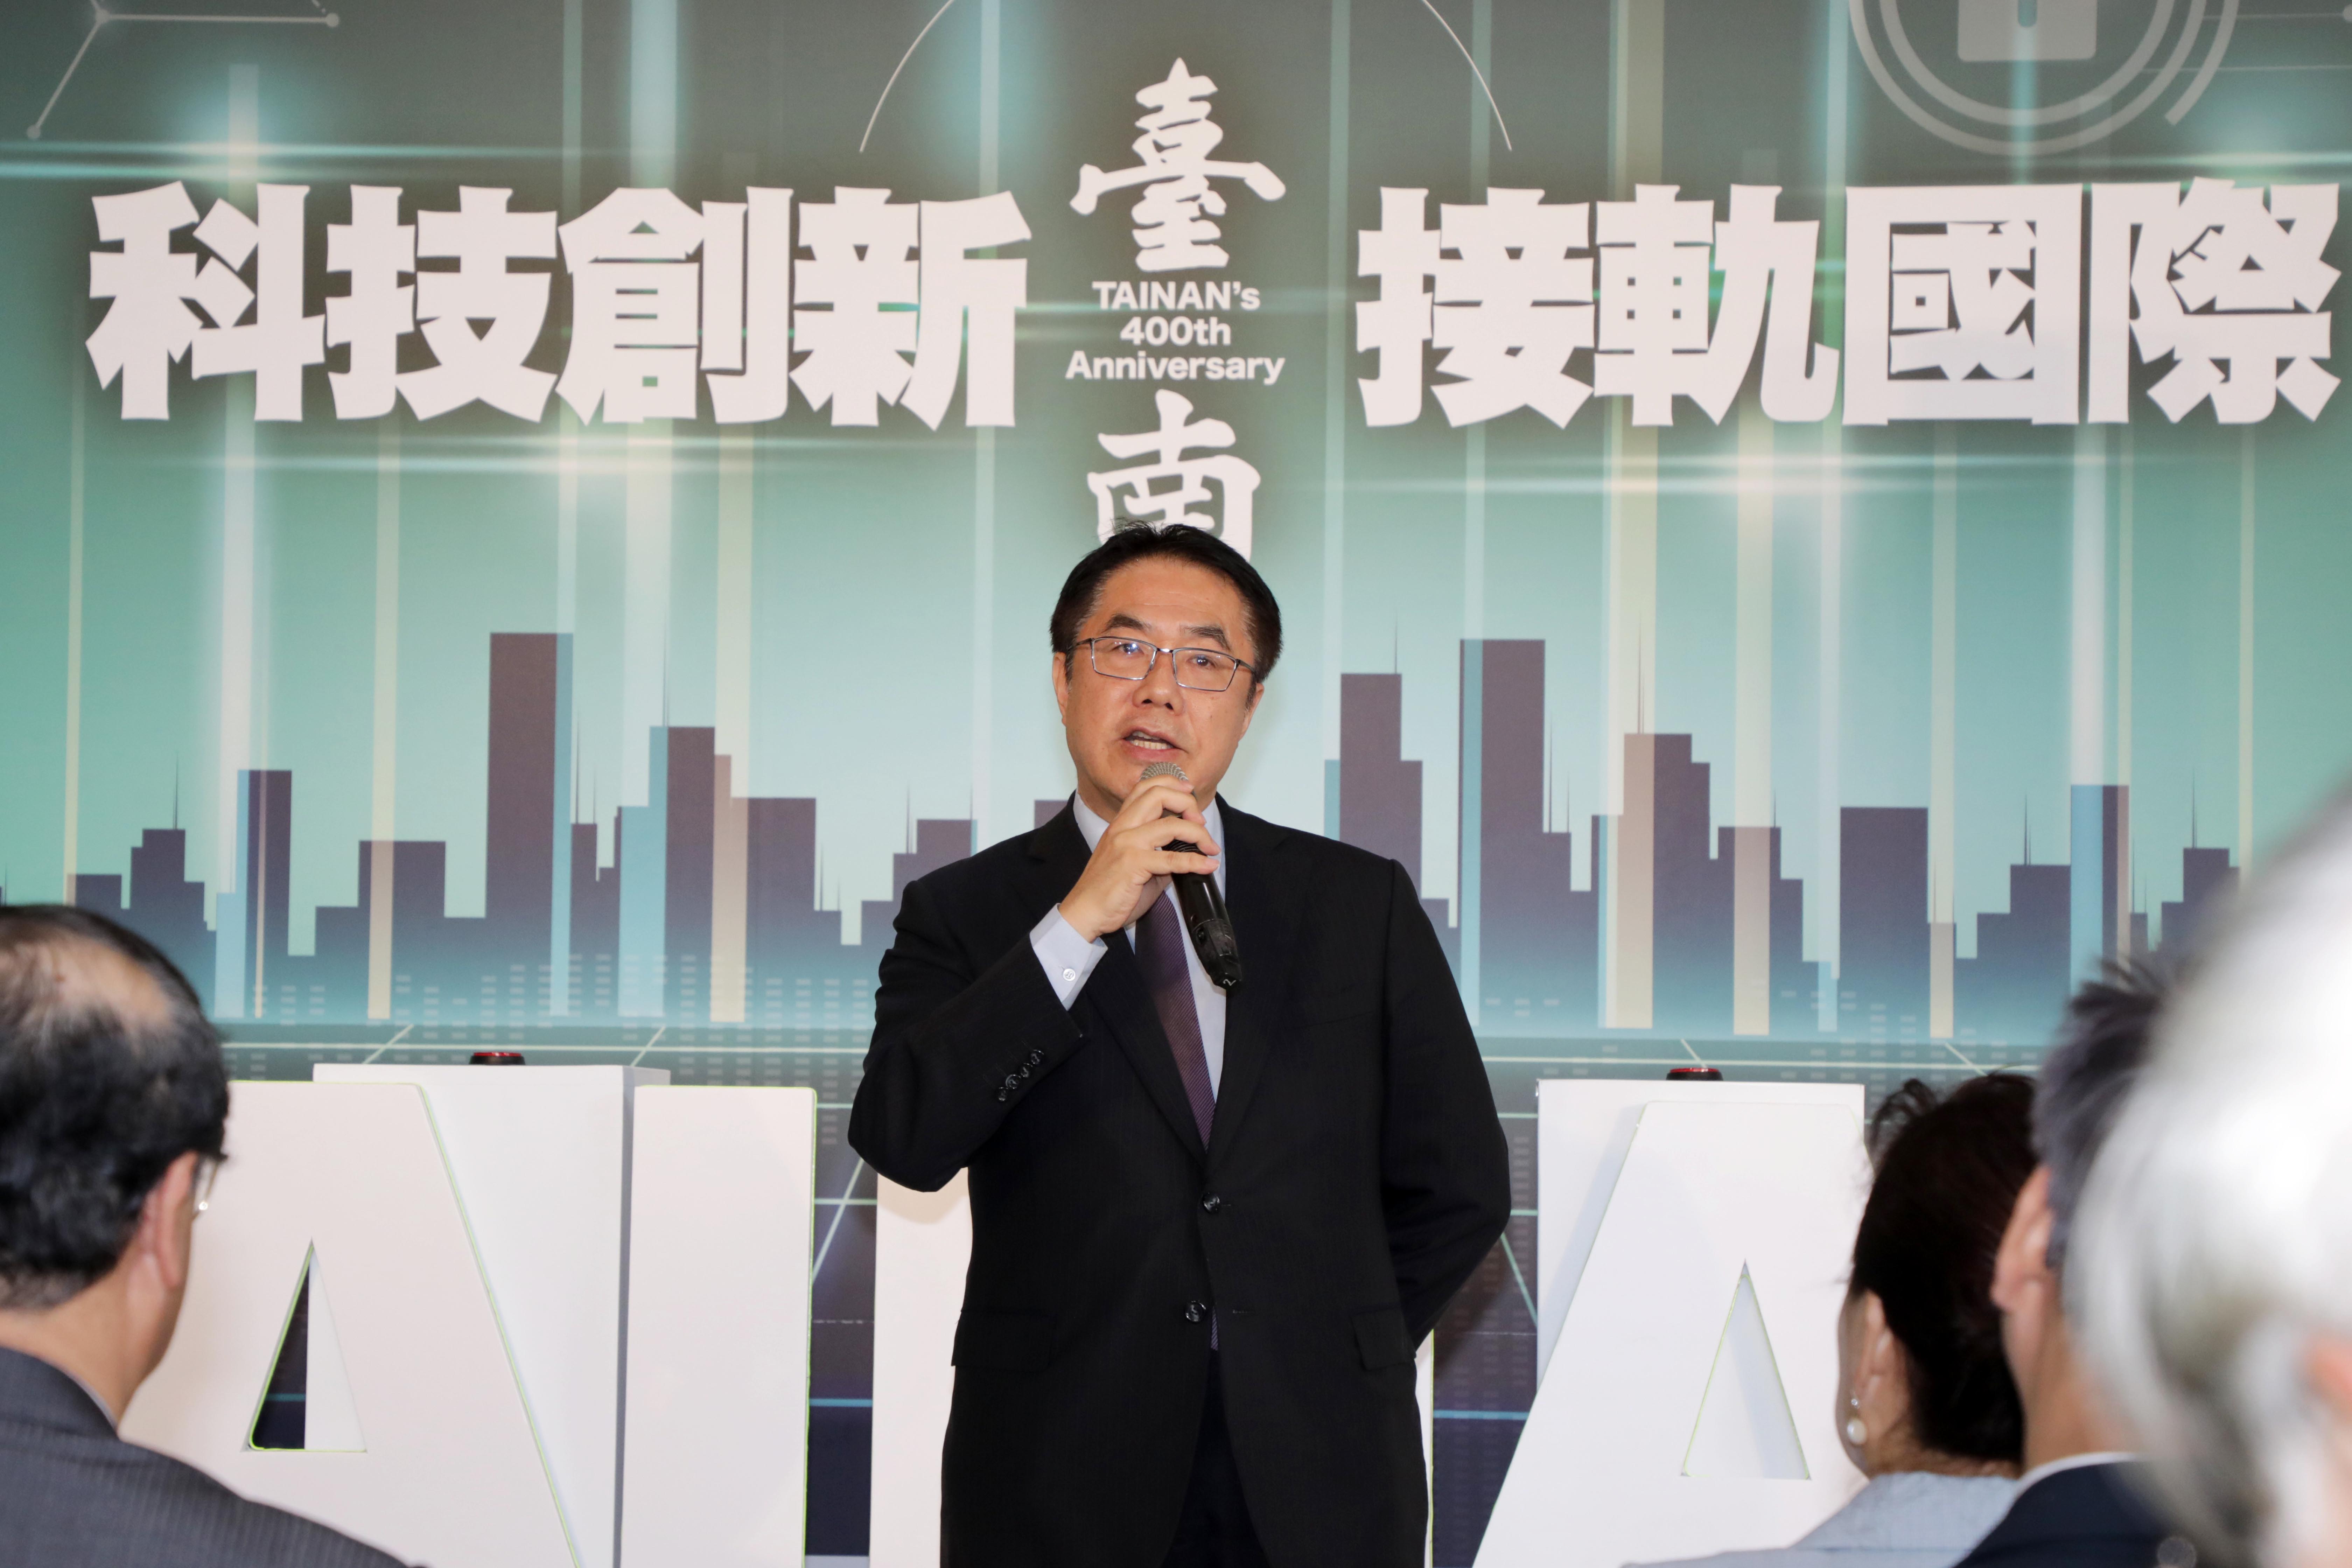 產業趨勢論壇台南登場 黃偉哲:台南未來定扮演台灣發展重要角色